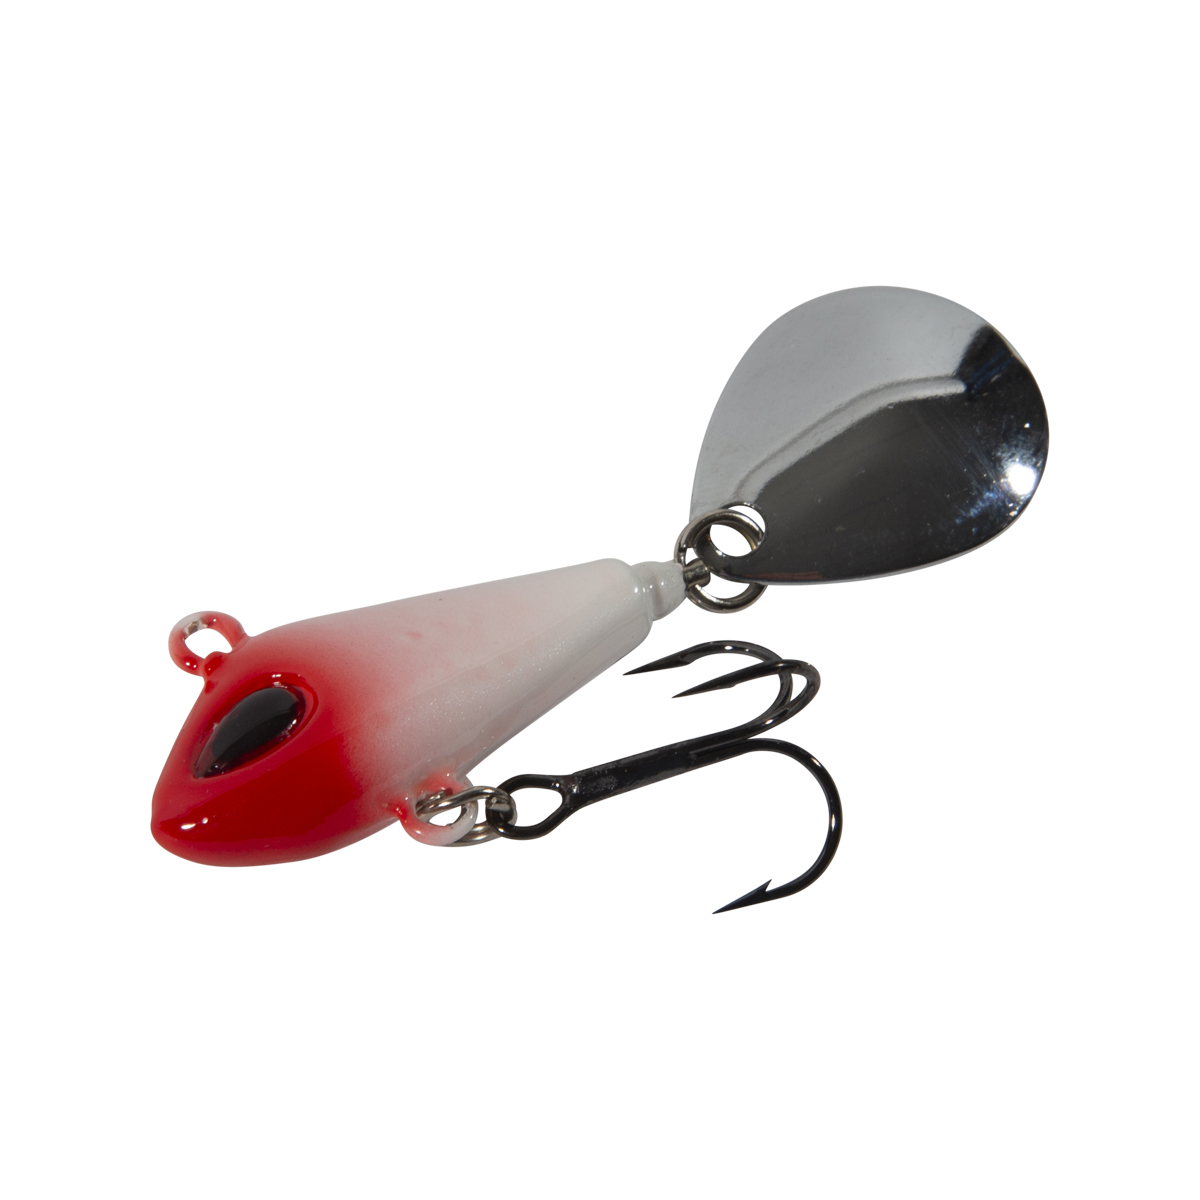 Fishing.Toys Virogo Plomo Lure Spin Tail 3.3-4.0cm (12-23g) - Golden/Red